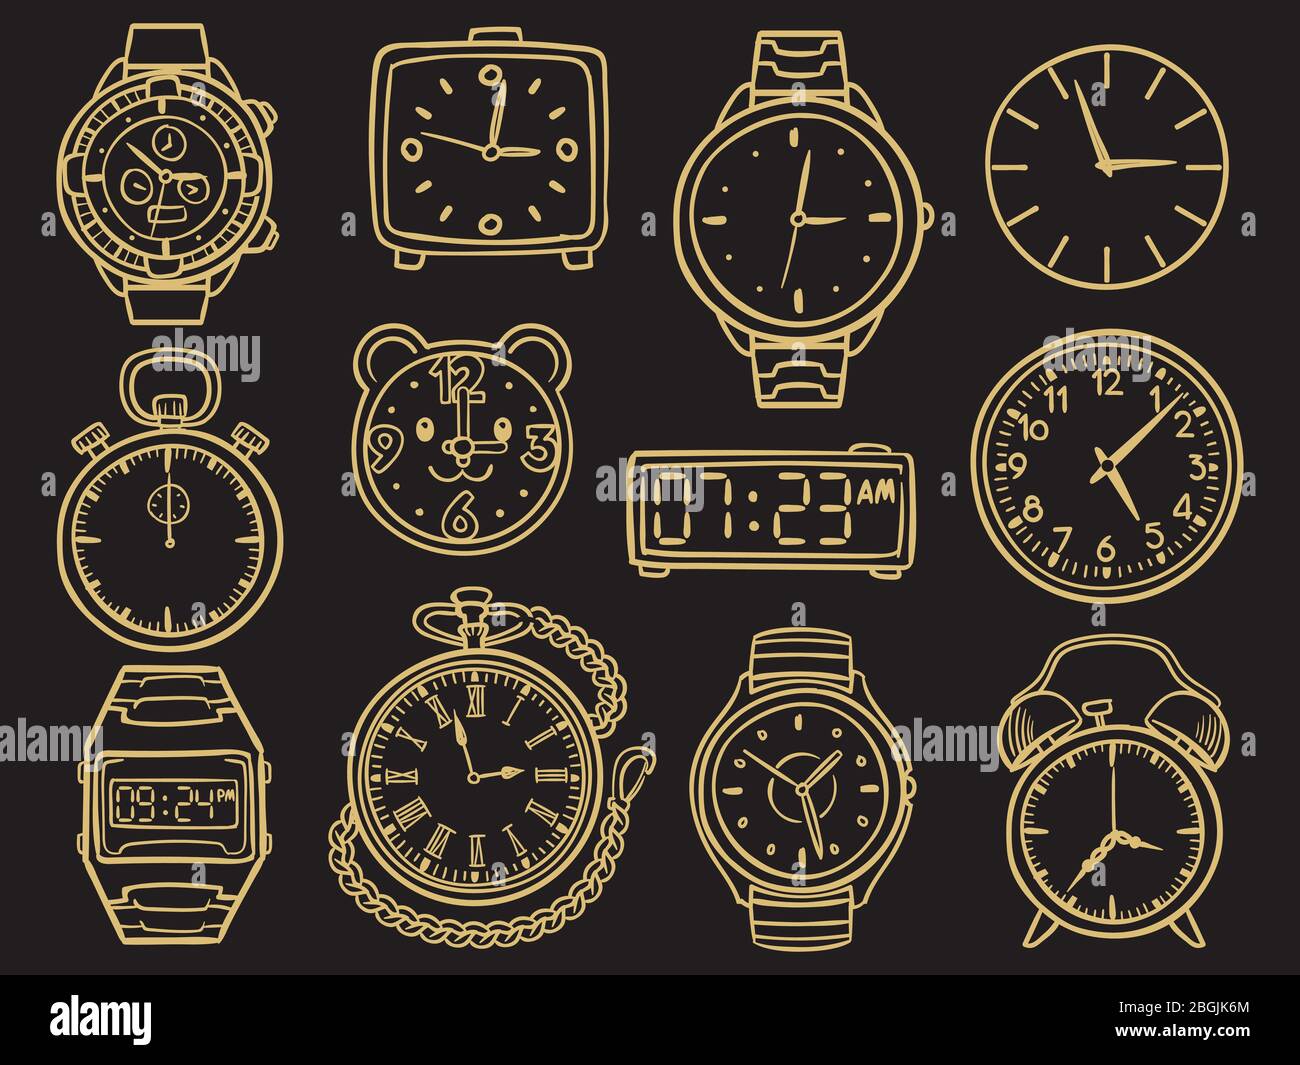 Handgezeichnete goldene Armbanduhr, Doodle Sketch Uhren, Wecker und Zeitmesser auf schwarzem Hintergrund isoliert. Vektorgrafik Stock Vektor